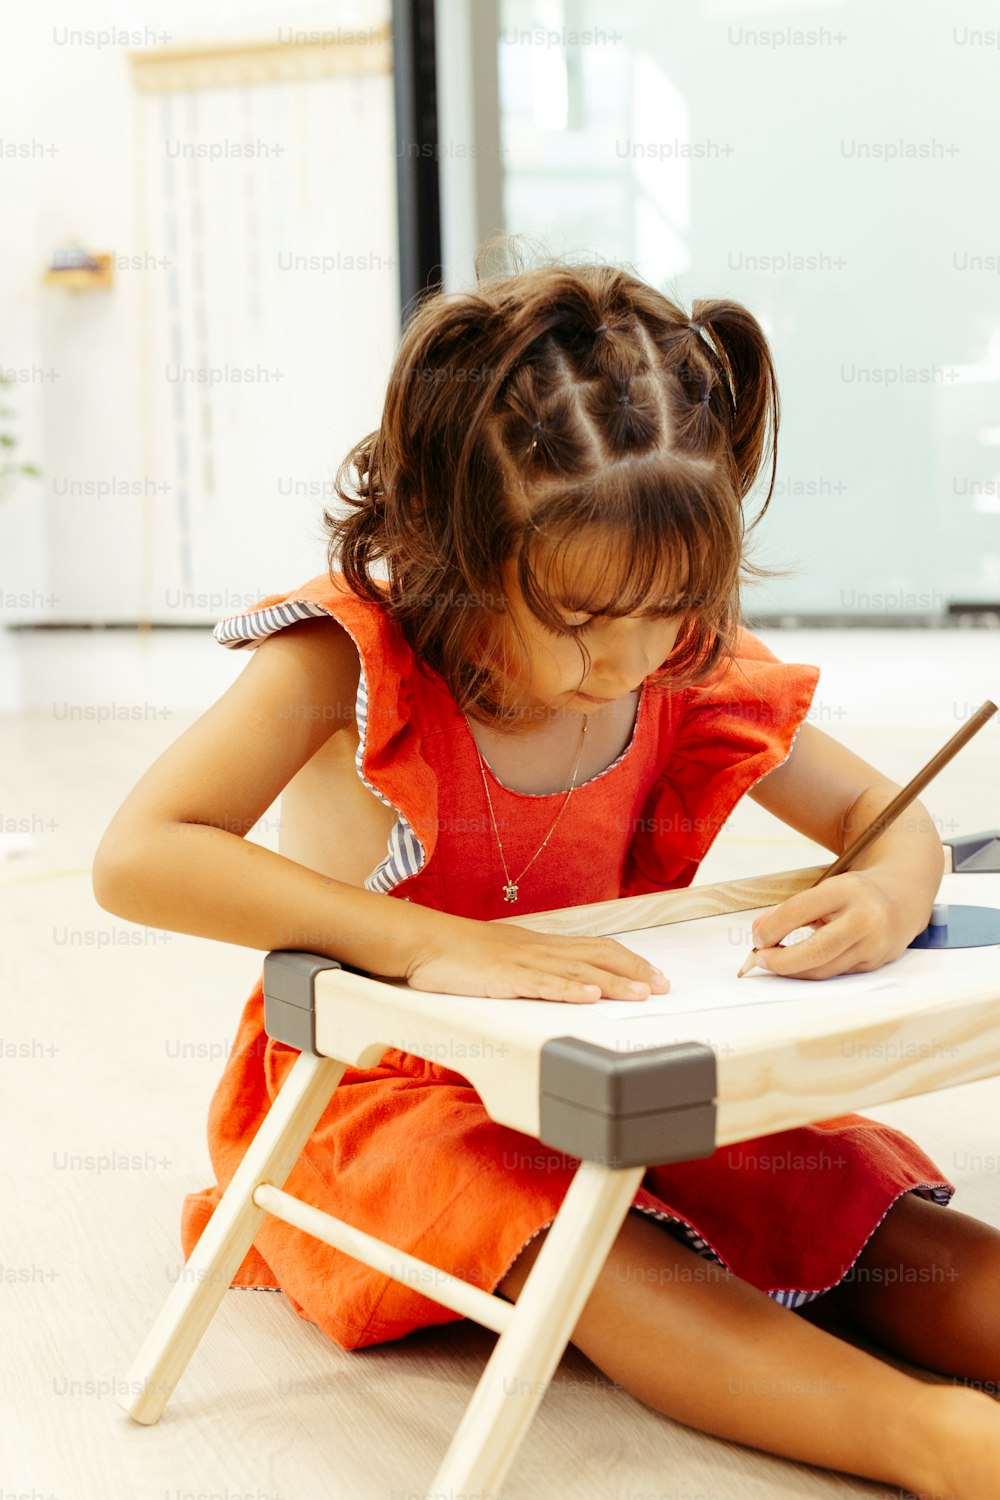 바닥에 앉아 종이에 글을 쓰는 어린 소녀